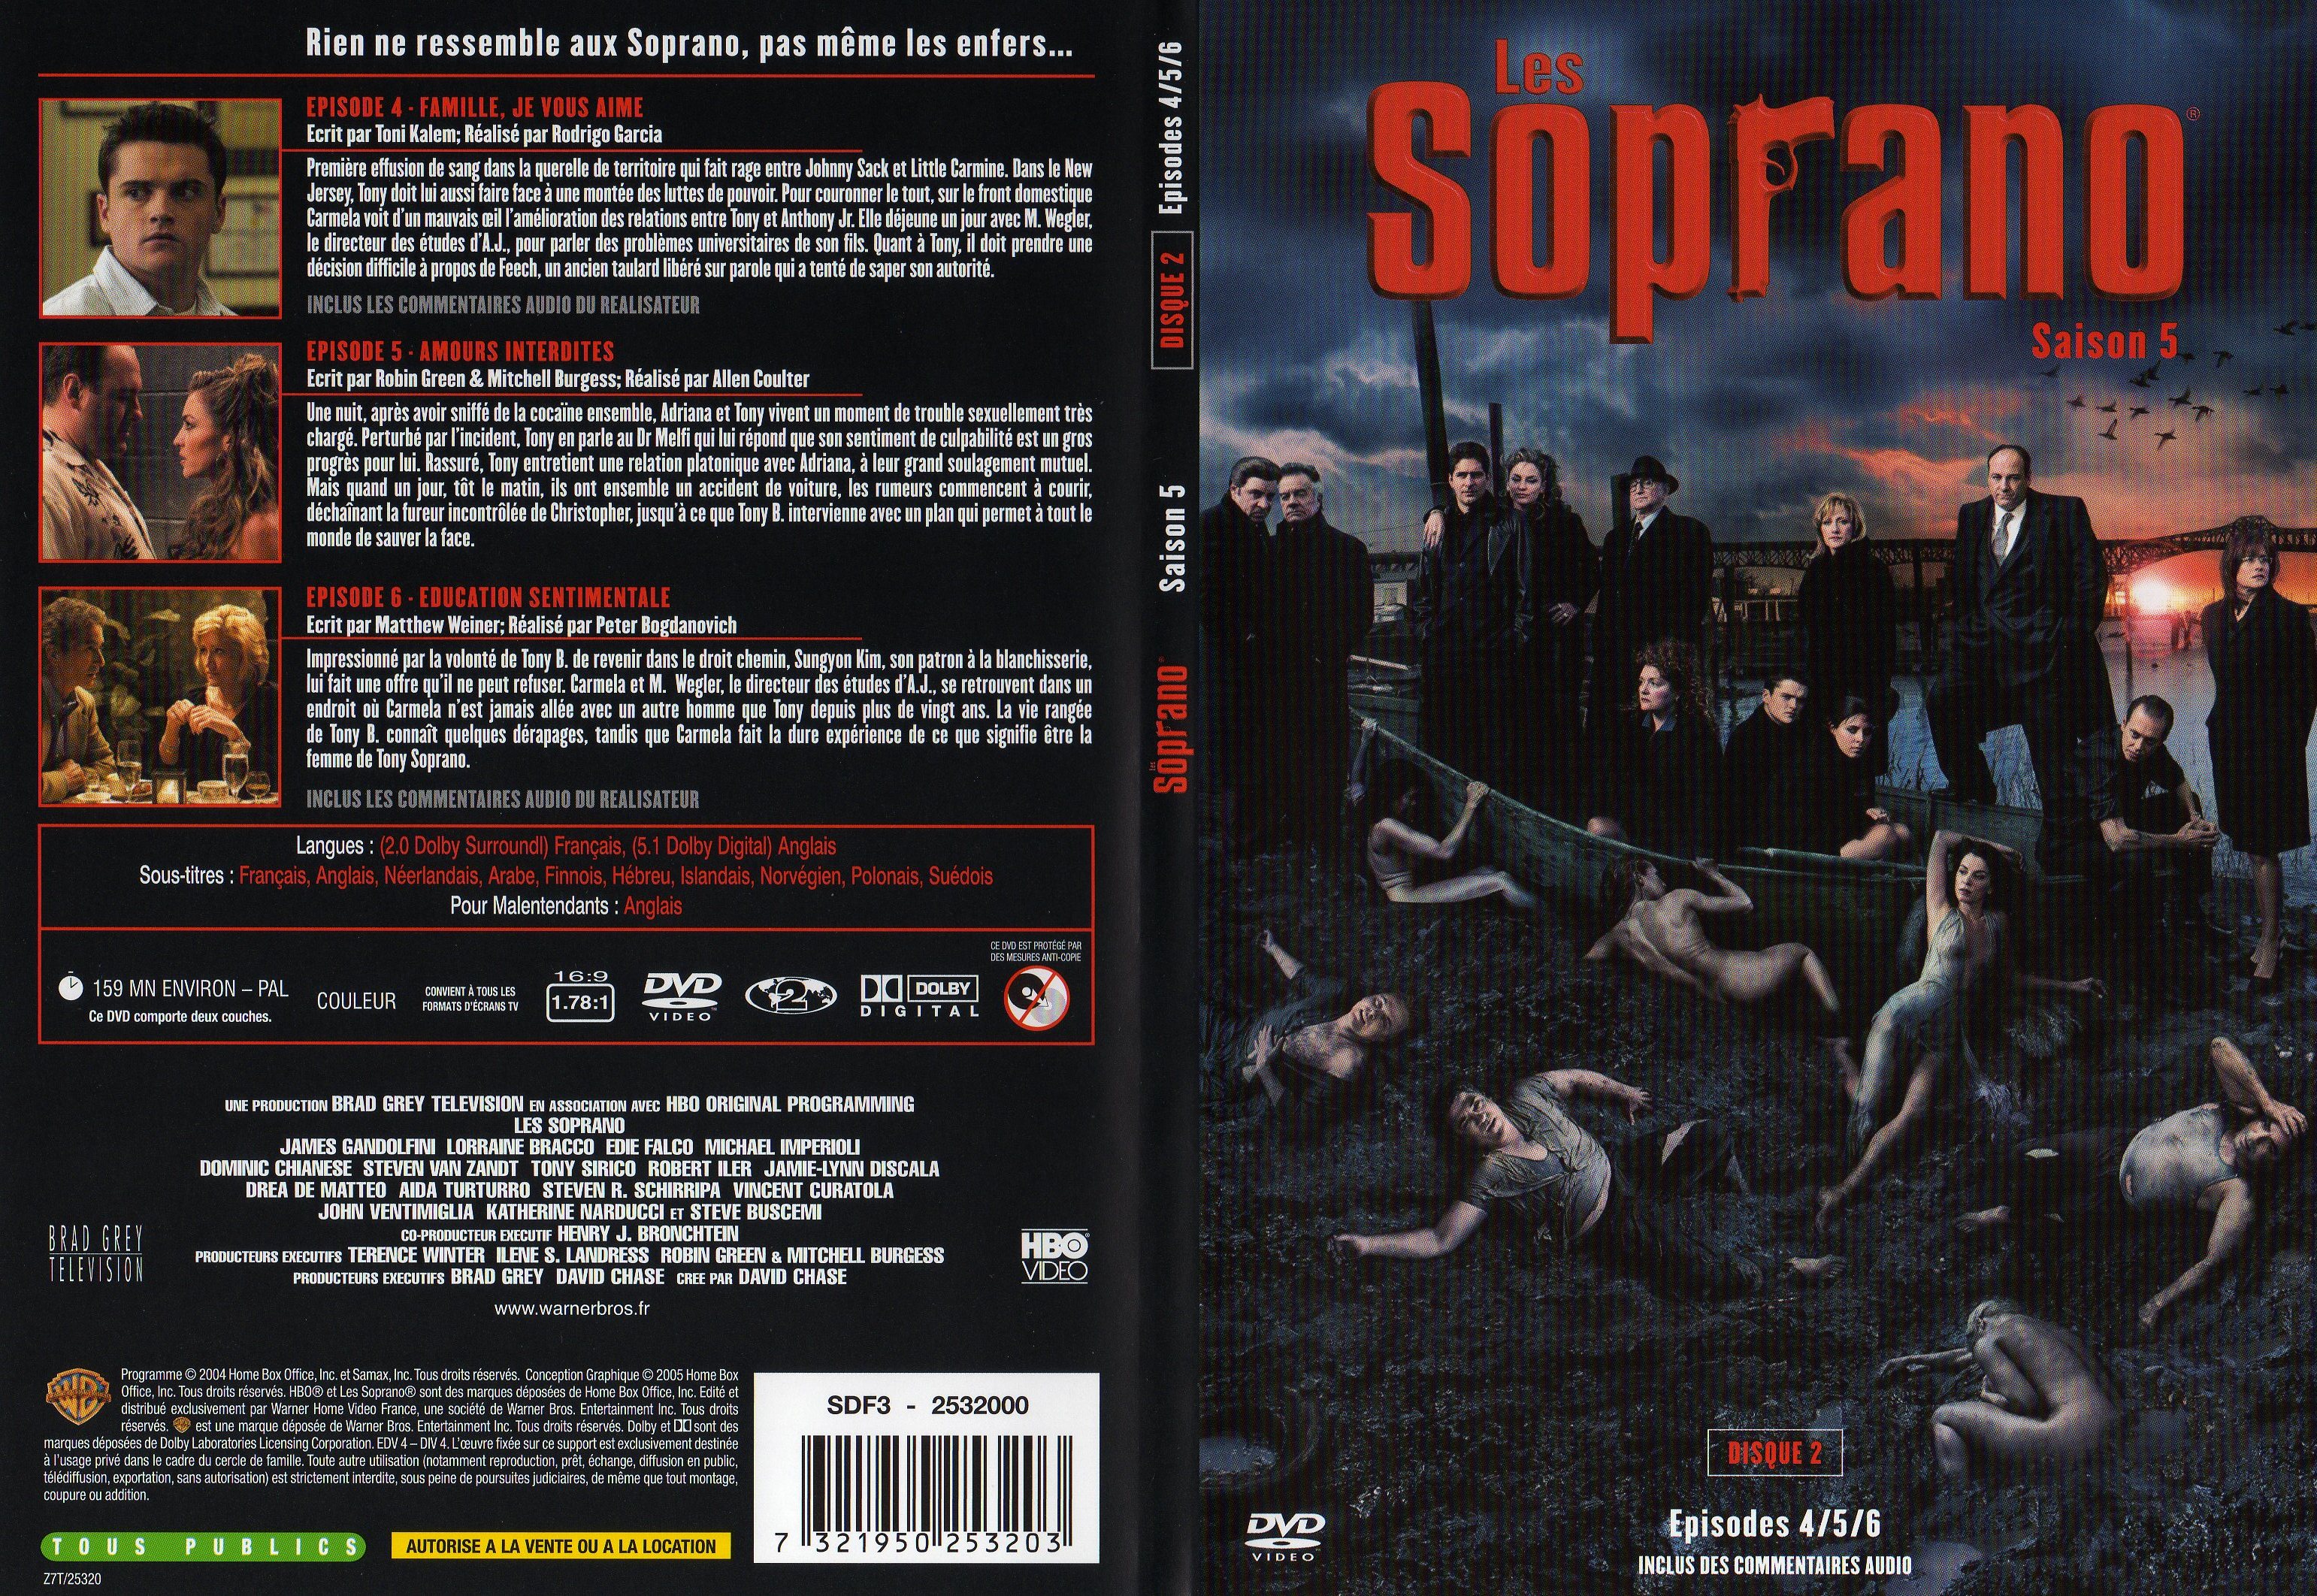 Jaquette DVD Les Soprano saison 5 DVD 2